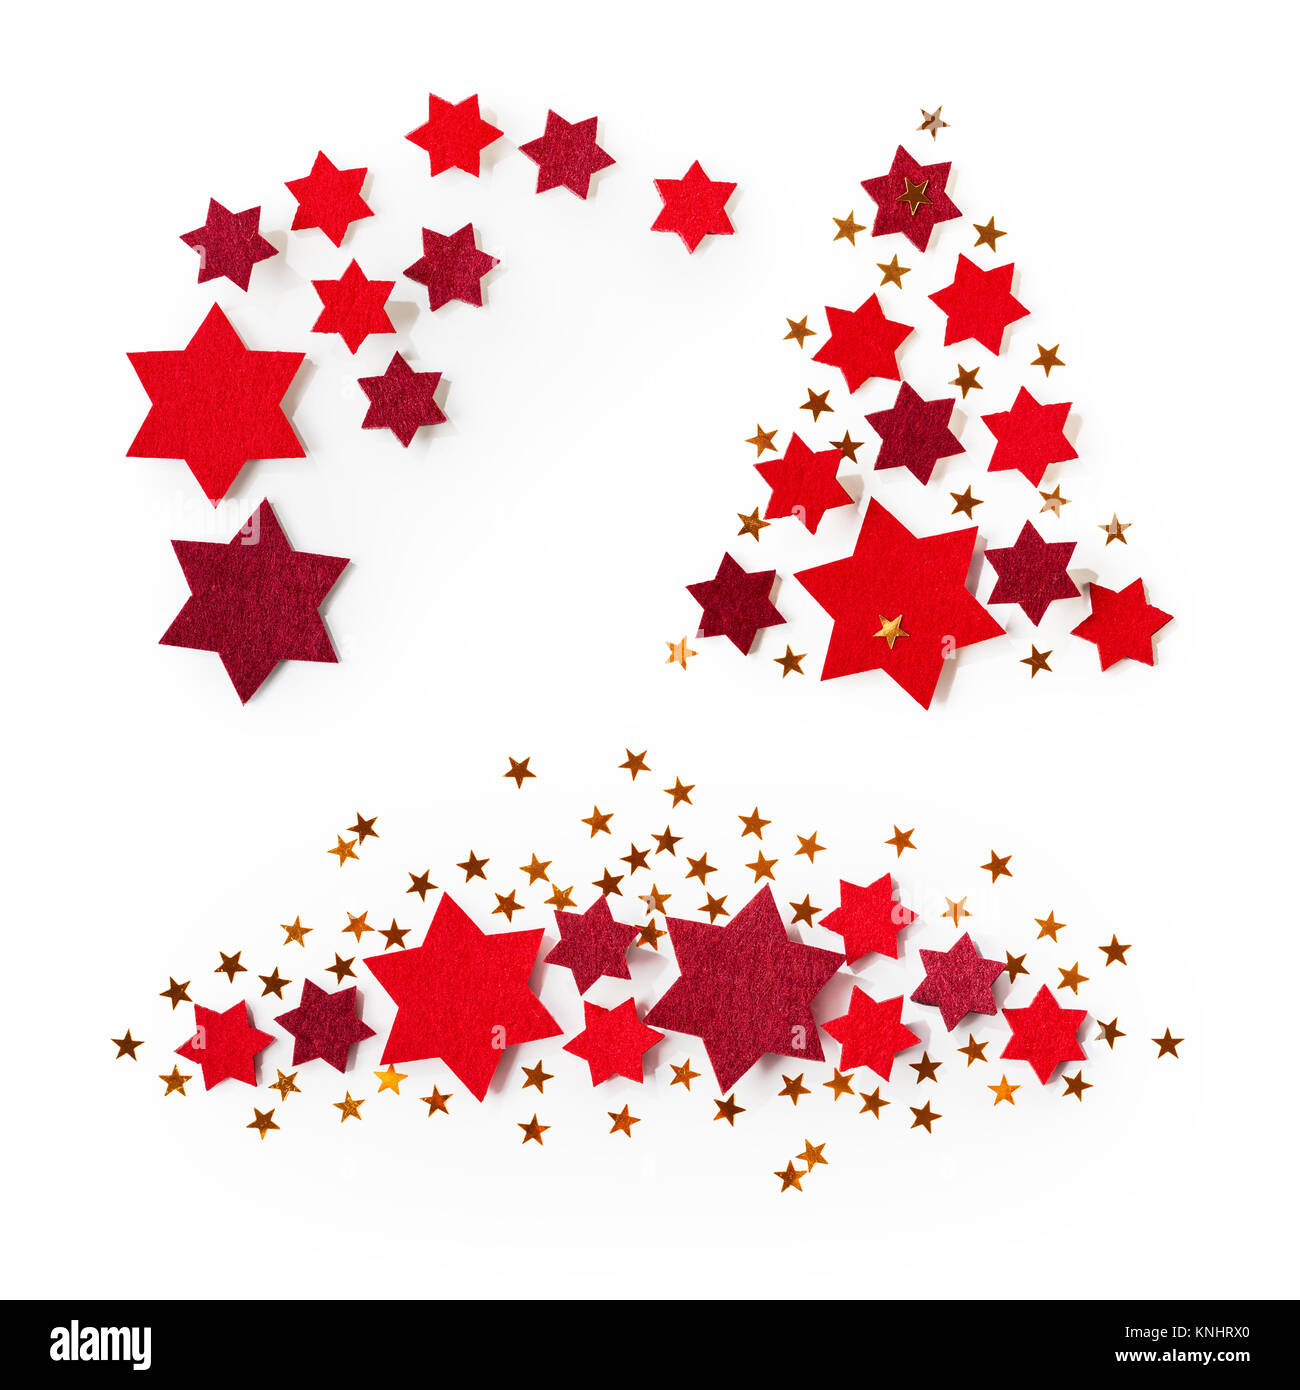 Weihnachten rot und gold Sterne Sammlung auf weißem Hintergrund. Ansicht  von oben, flach Stockfotografie - Alamy